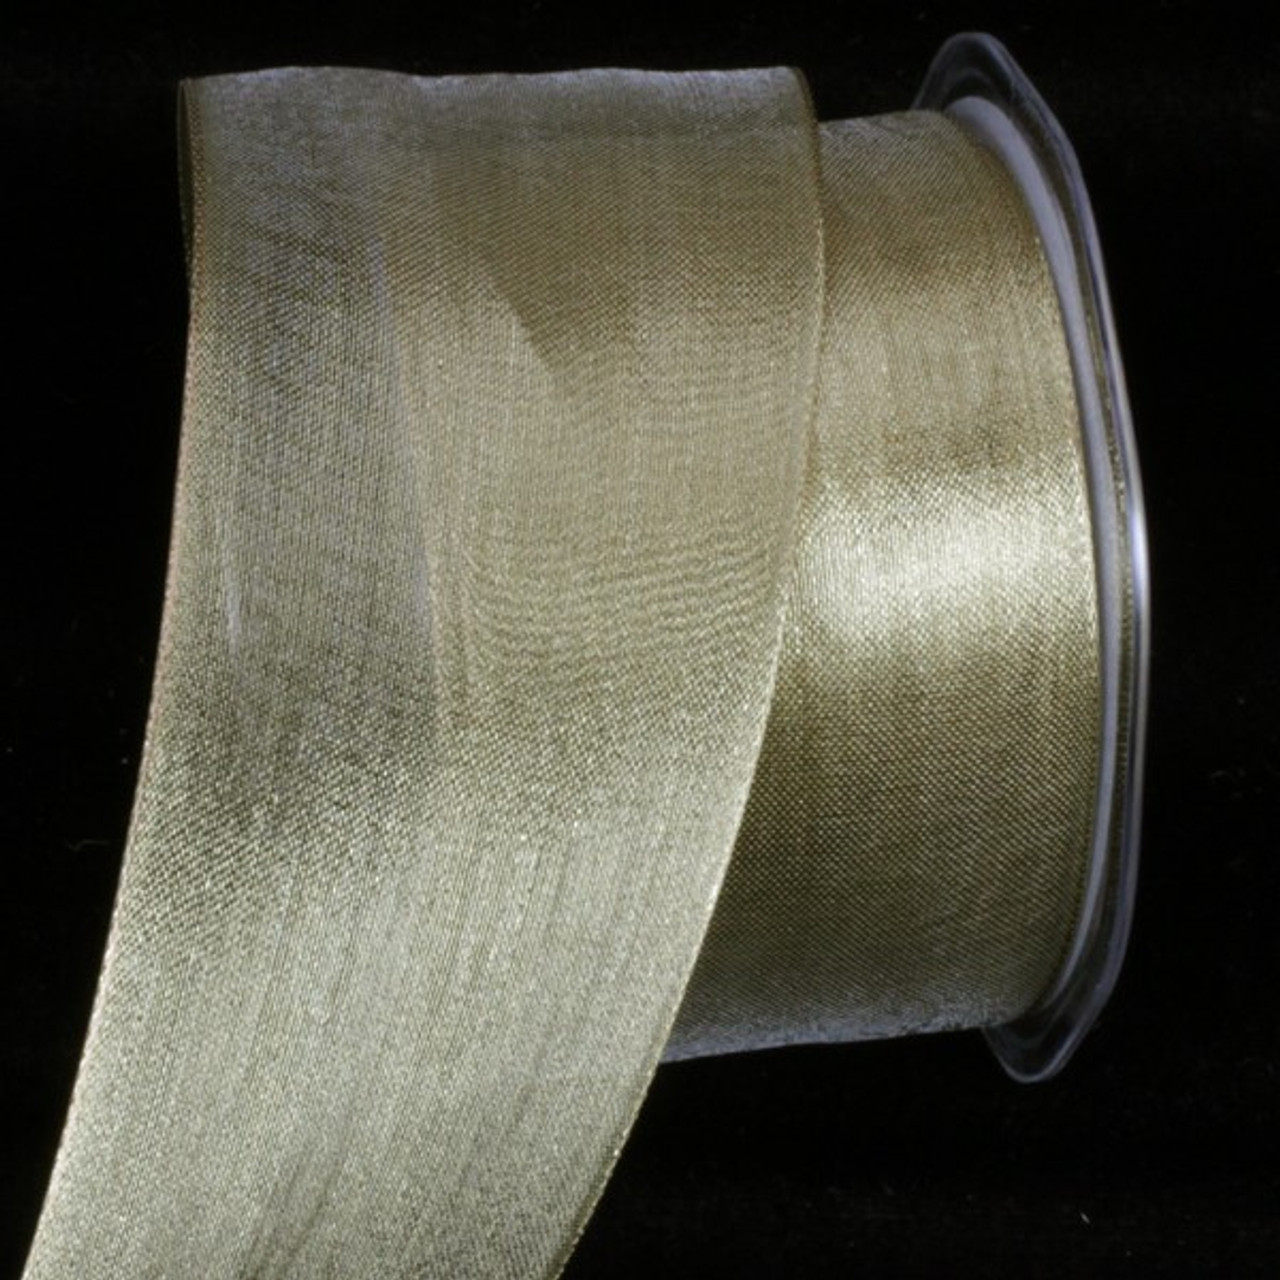 Fuchsia | Metallic Deco Mesh Ribbons | 2.5 inch x 25 Yards | Bb Crafts